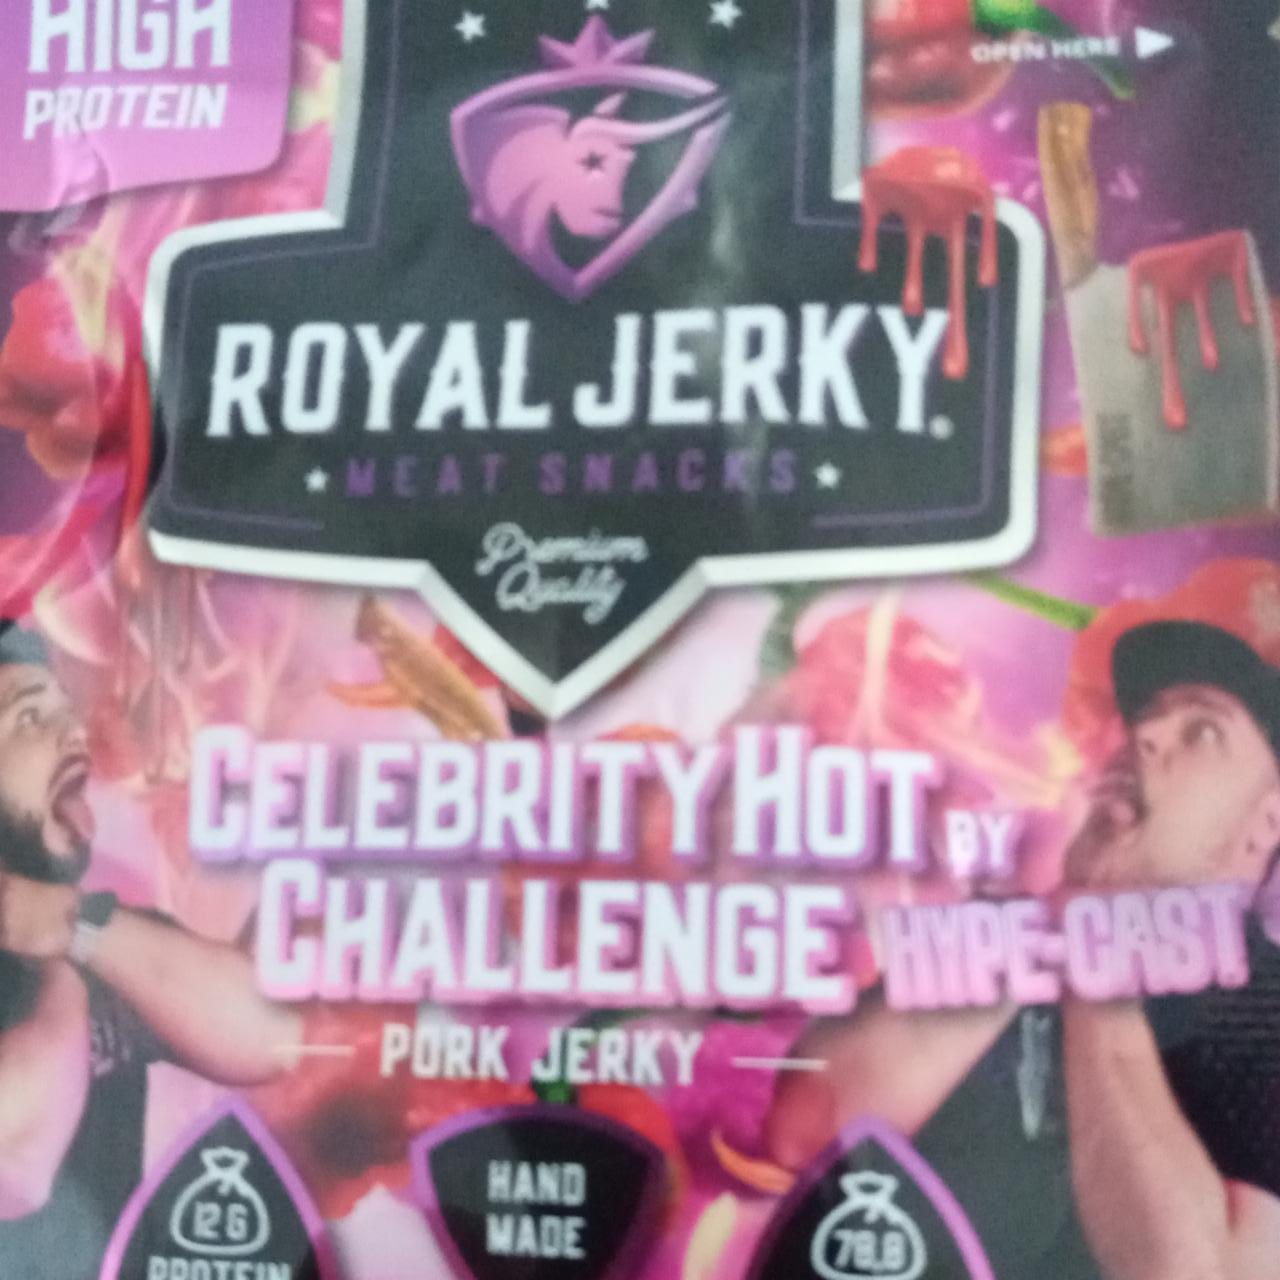 Fotografie - Celebrity Hot Challenge Hype-Cast Pork jerky Royal Jerky